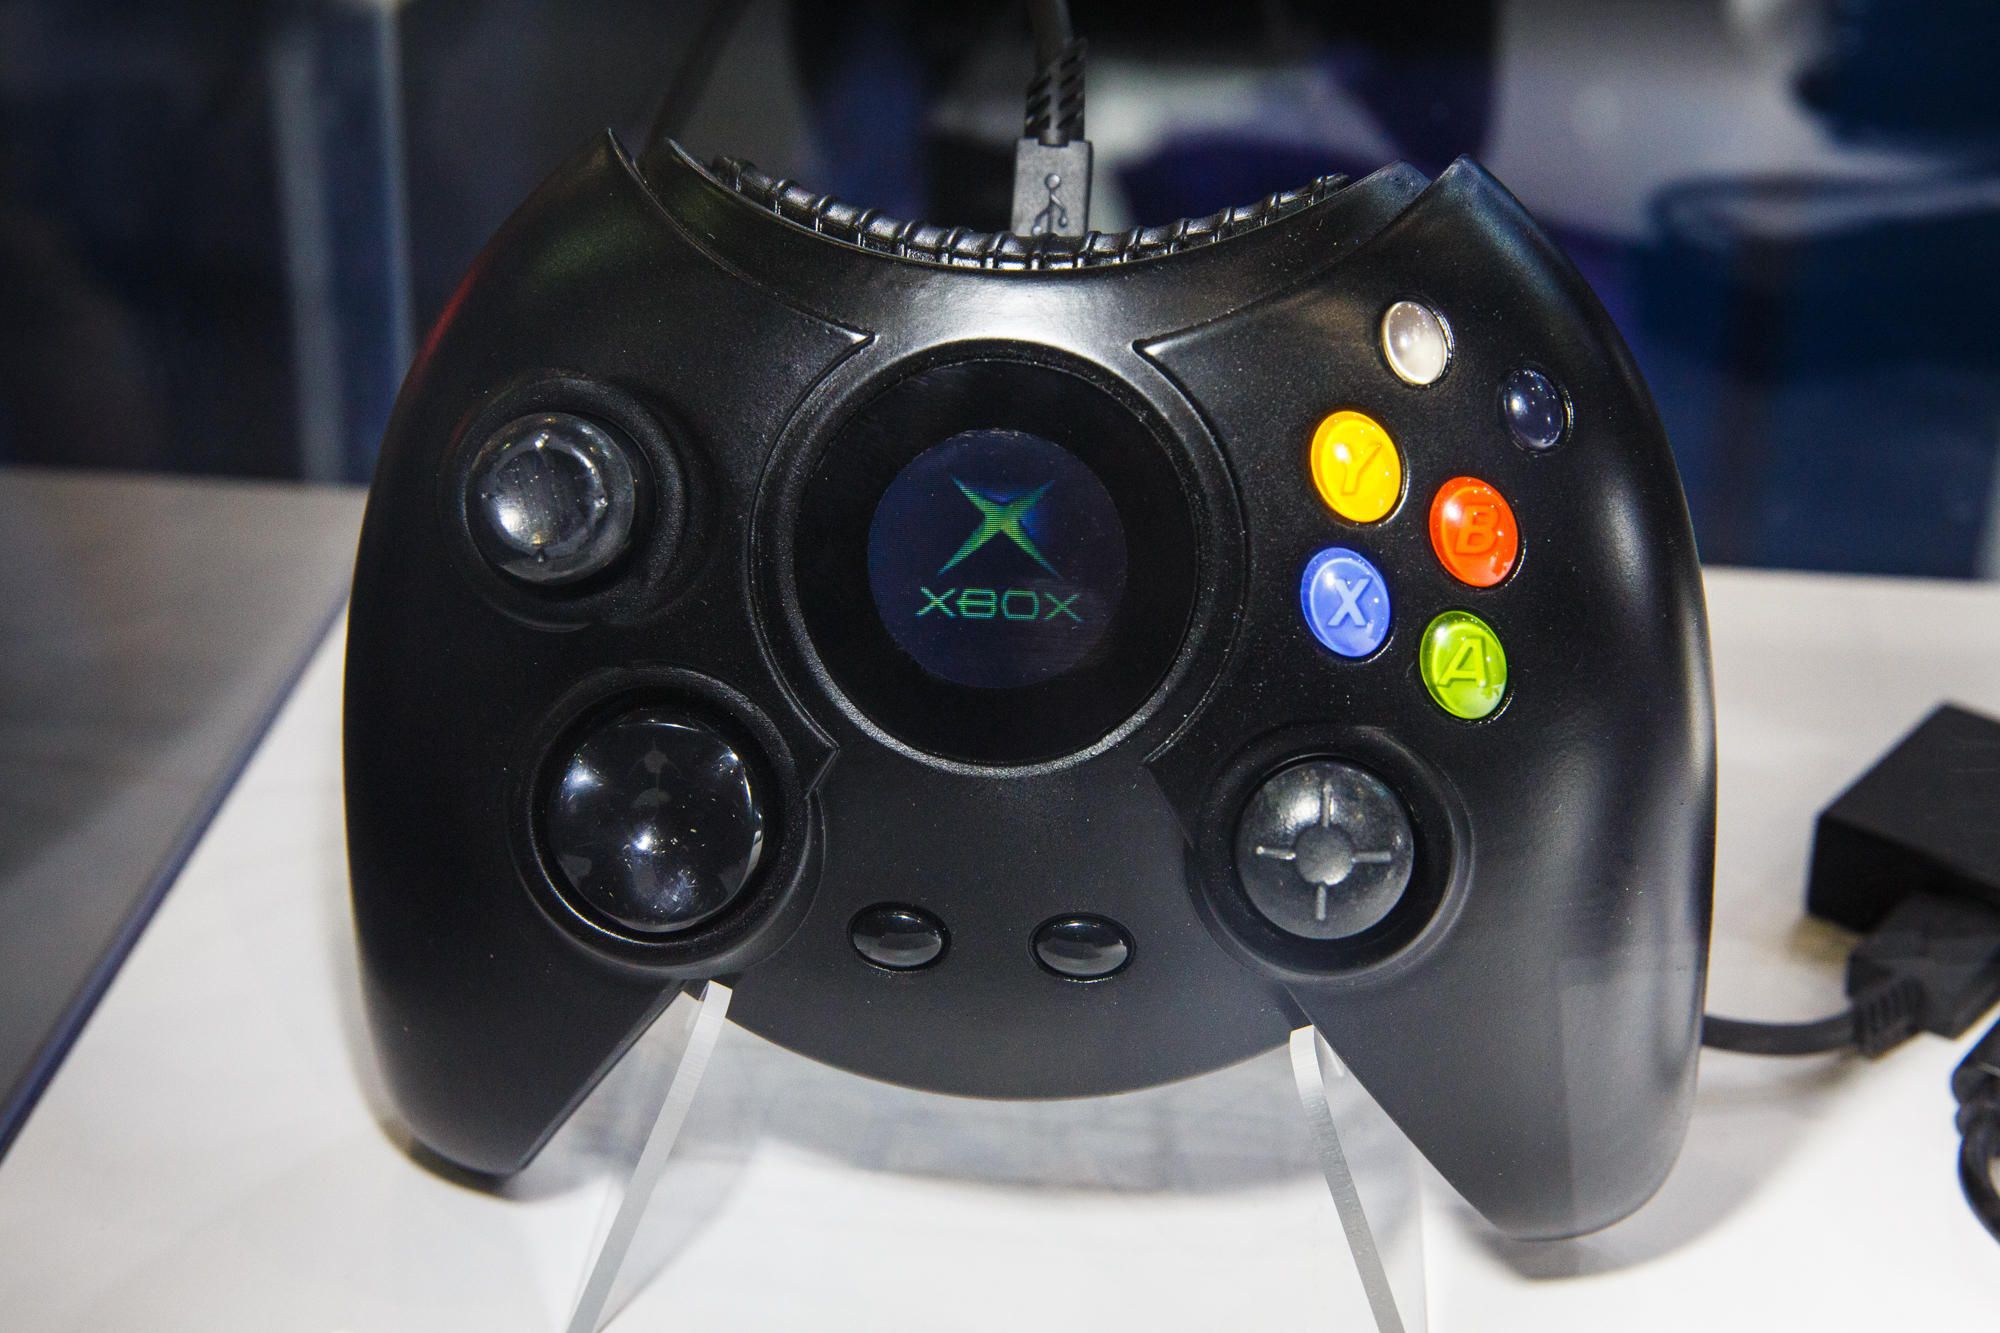 اشترِ وحدة تحكم Xbox أصلية على لوحة إعلانات في إسرائيل الحنين إلى الماضي للألعاب القديمة